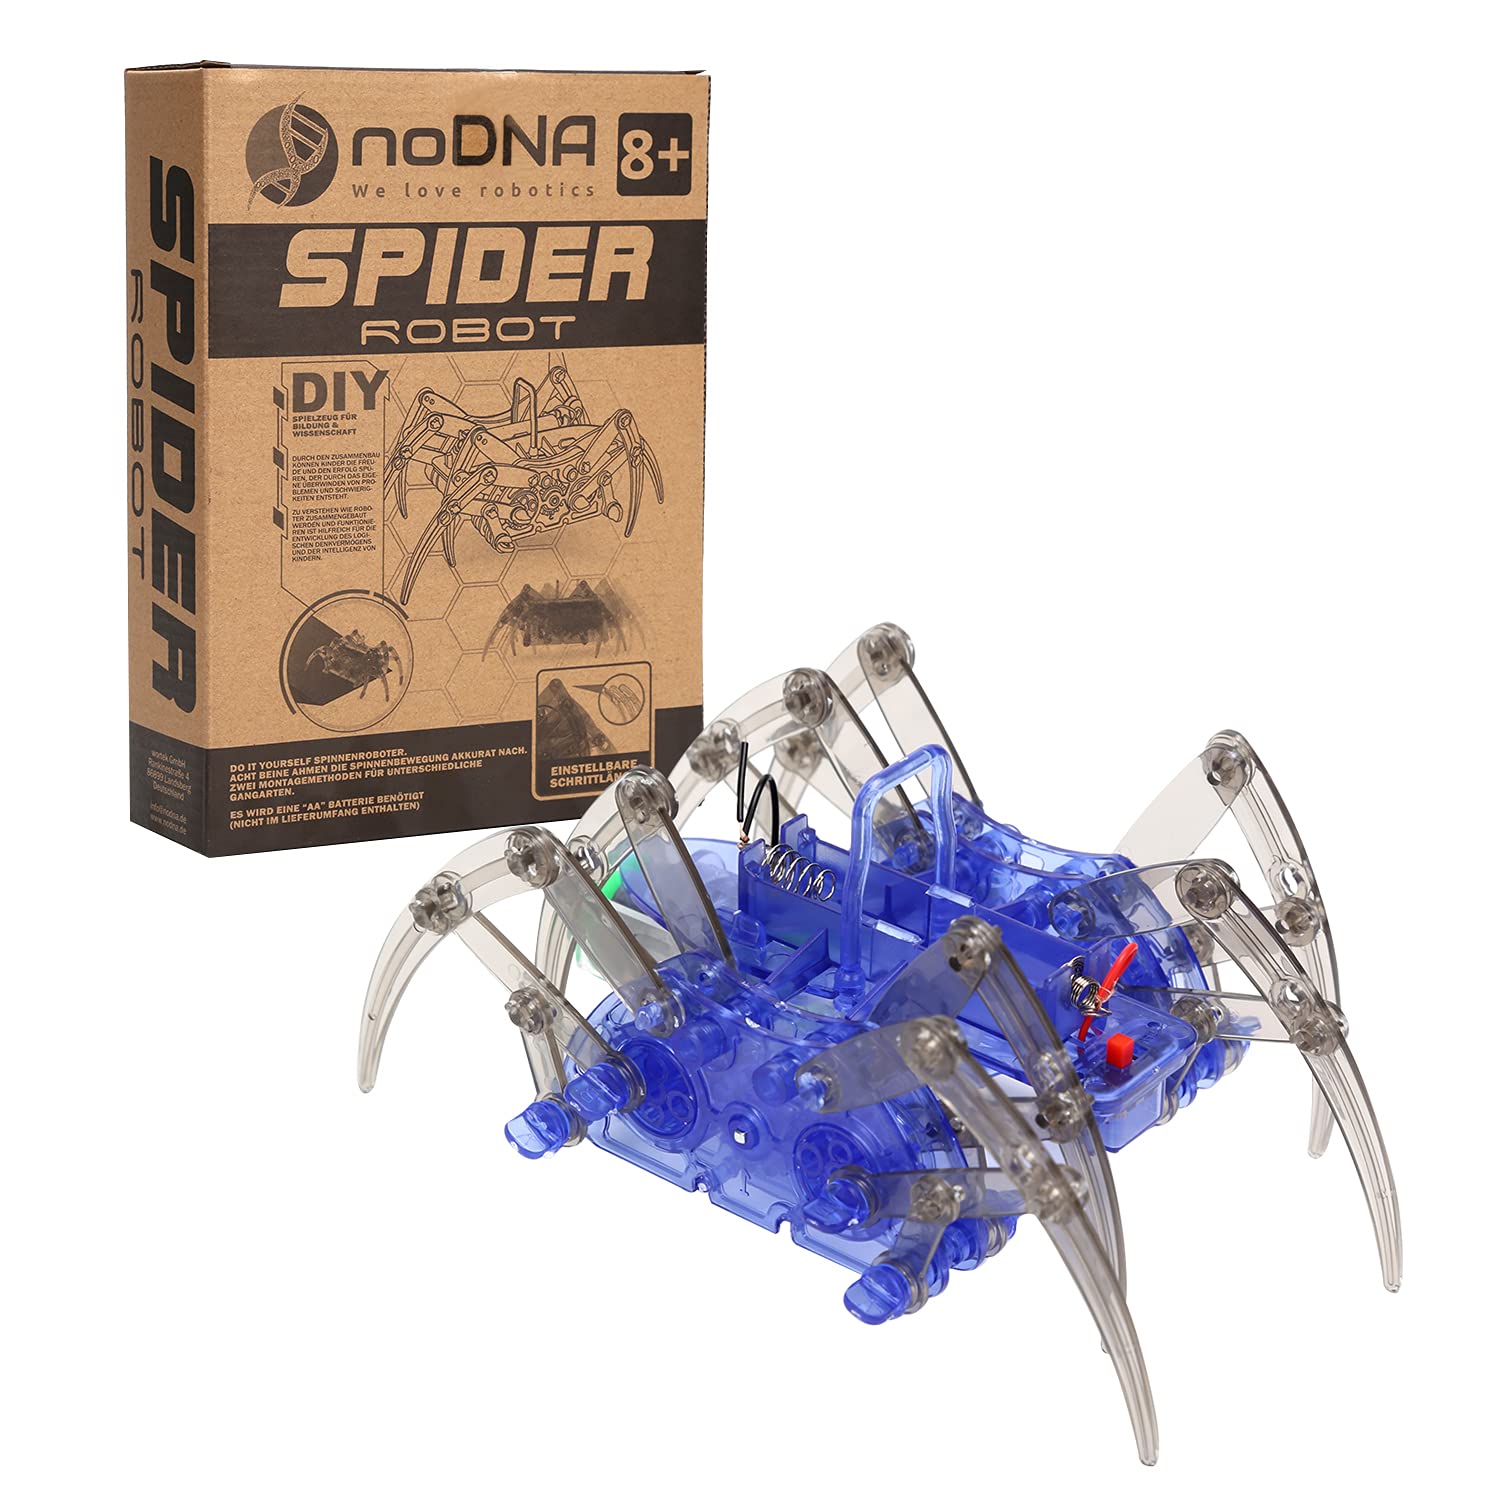 Mua noDNA We love robotics Spider Robot Children's Toy to Build